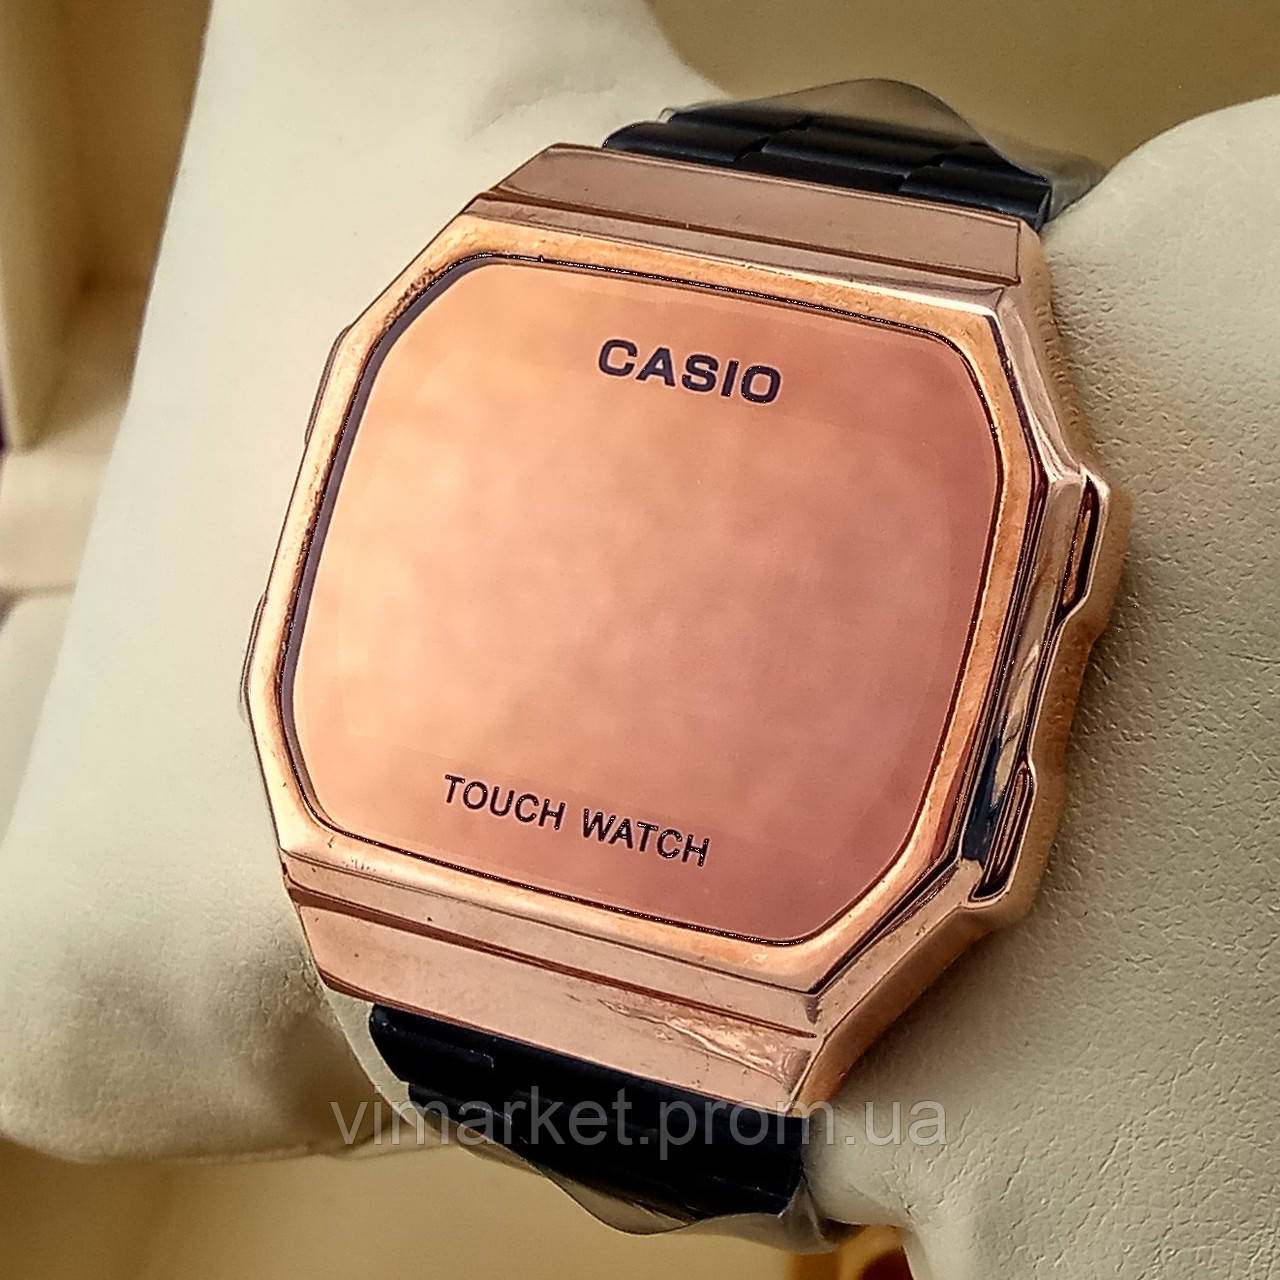 Сенсорний кварцовий (електронний) наручний годинник Casio A168 Touch Watch комбінованого кольору золото з чорним